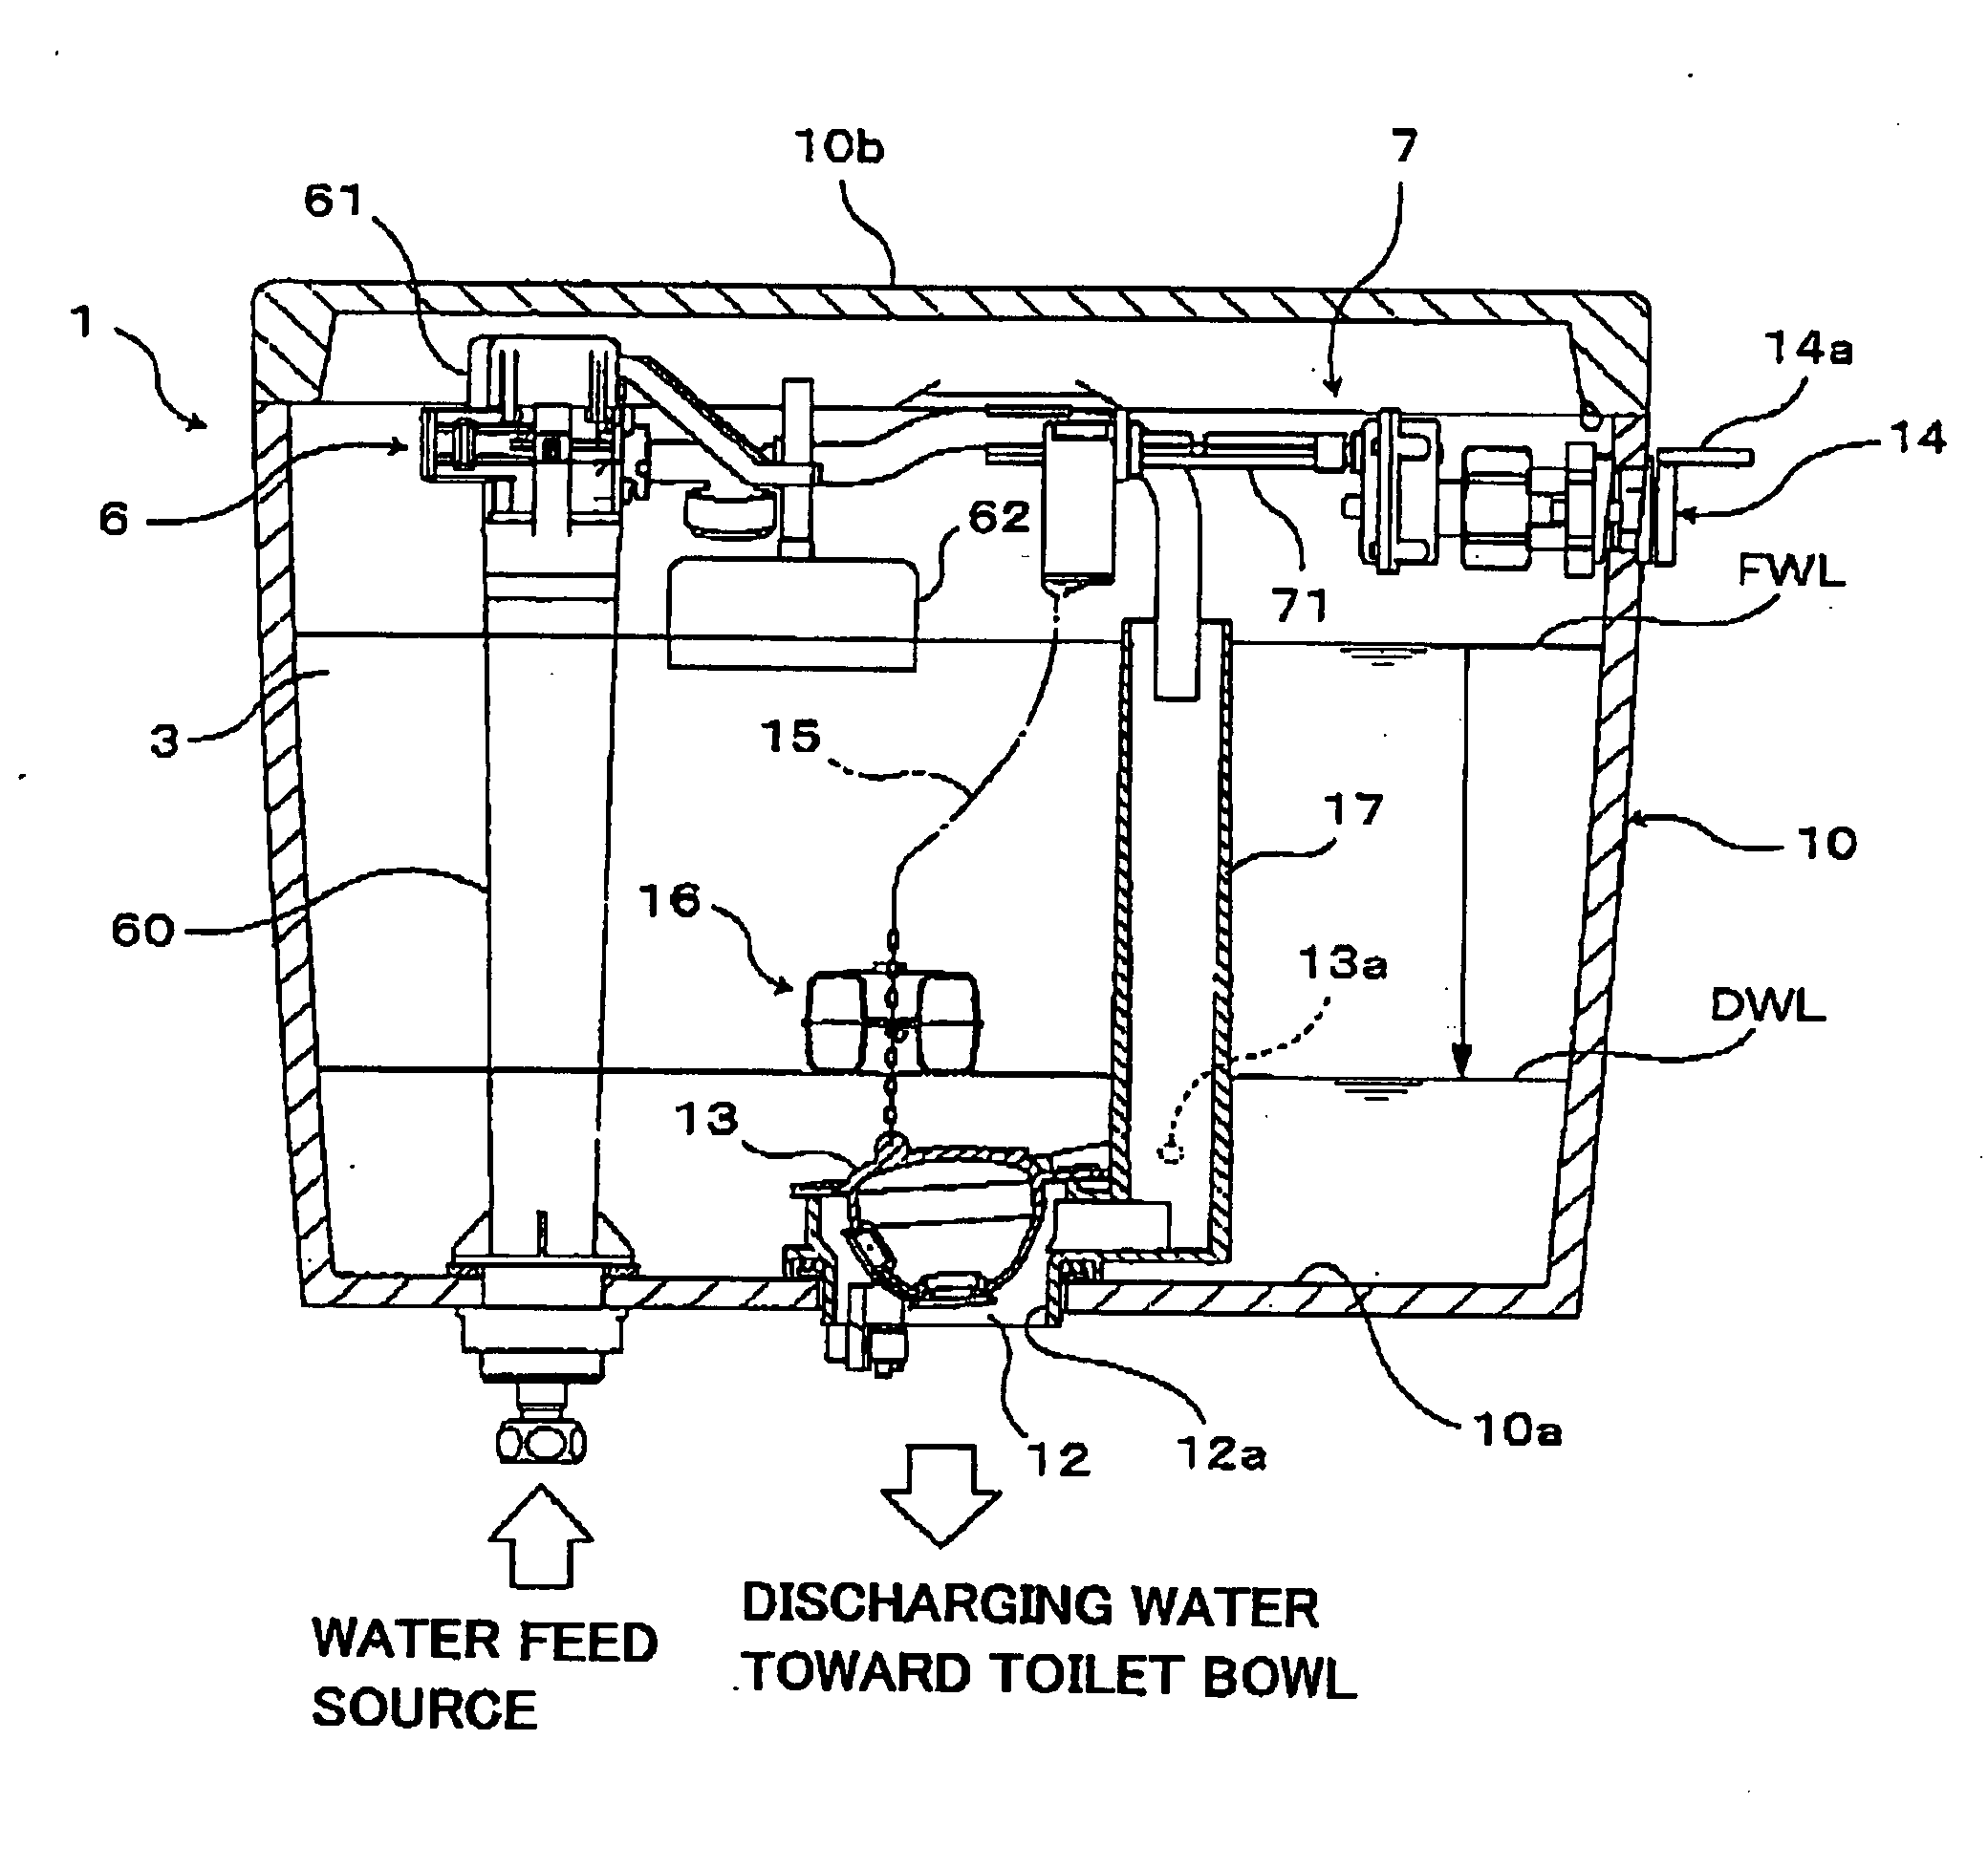 Toilet bowl flushing water tank device